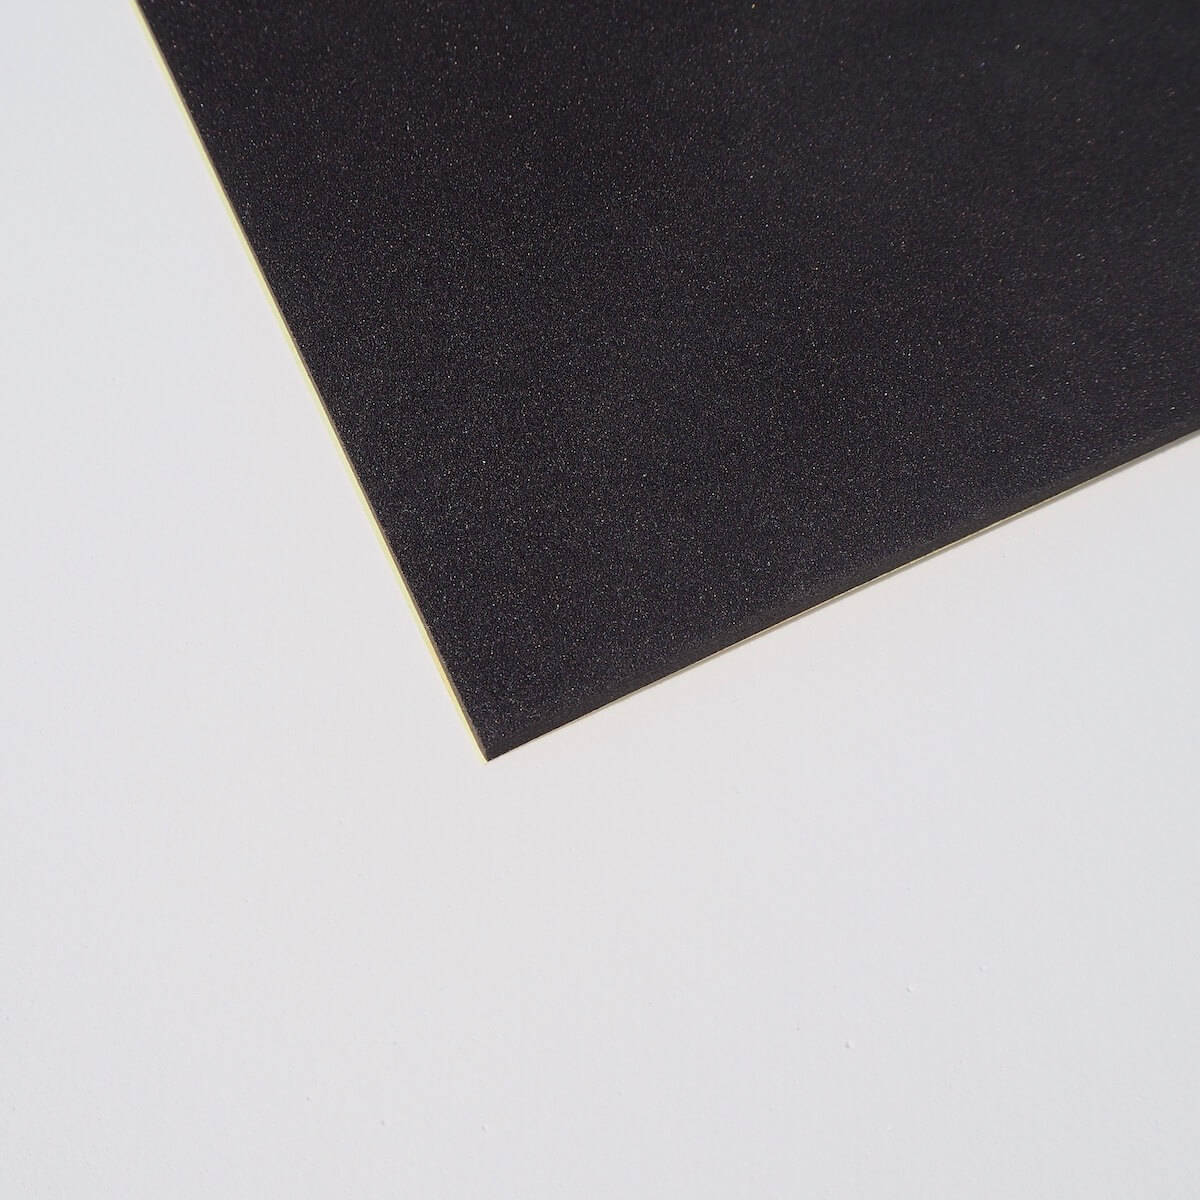 Selbstklebender Schaumstoff EVA schwarz 3 mm - 120x100 cm 120x100 cm, Materialien \ EVA Schaum \ Selbstklebend